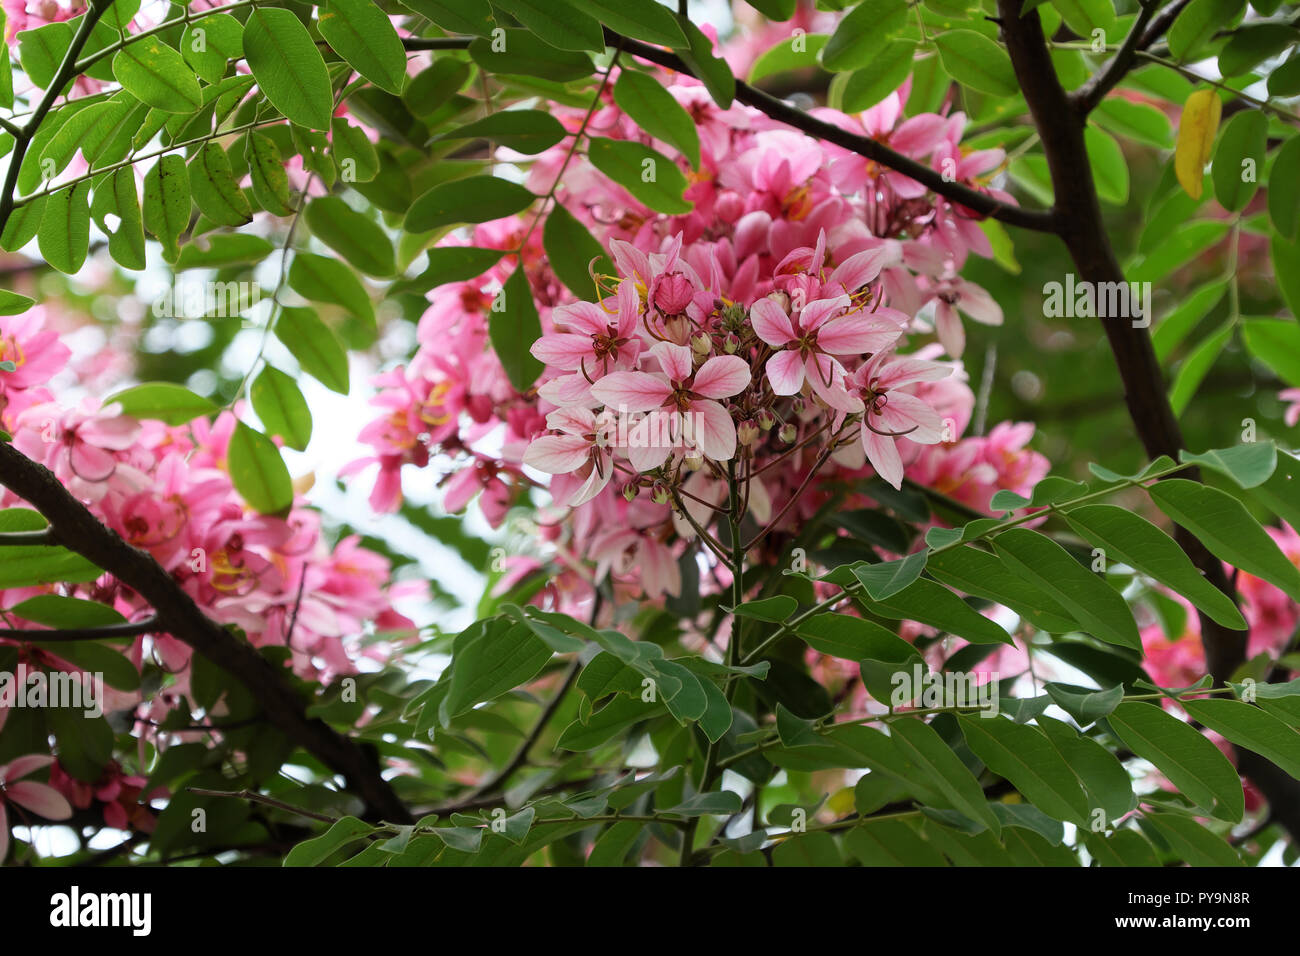 Beau grand arbre à fleurs roses, arbre flamboyant vermillon bloom en couleurs vives le jour Banque D'Images